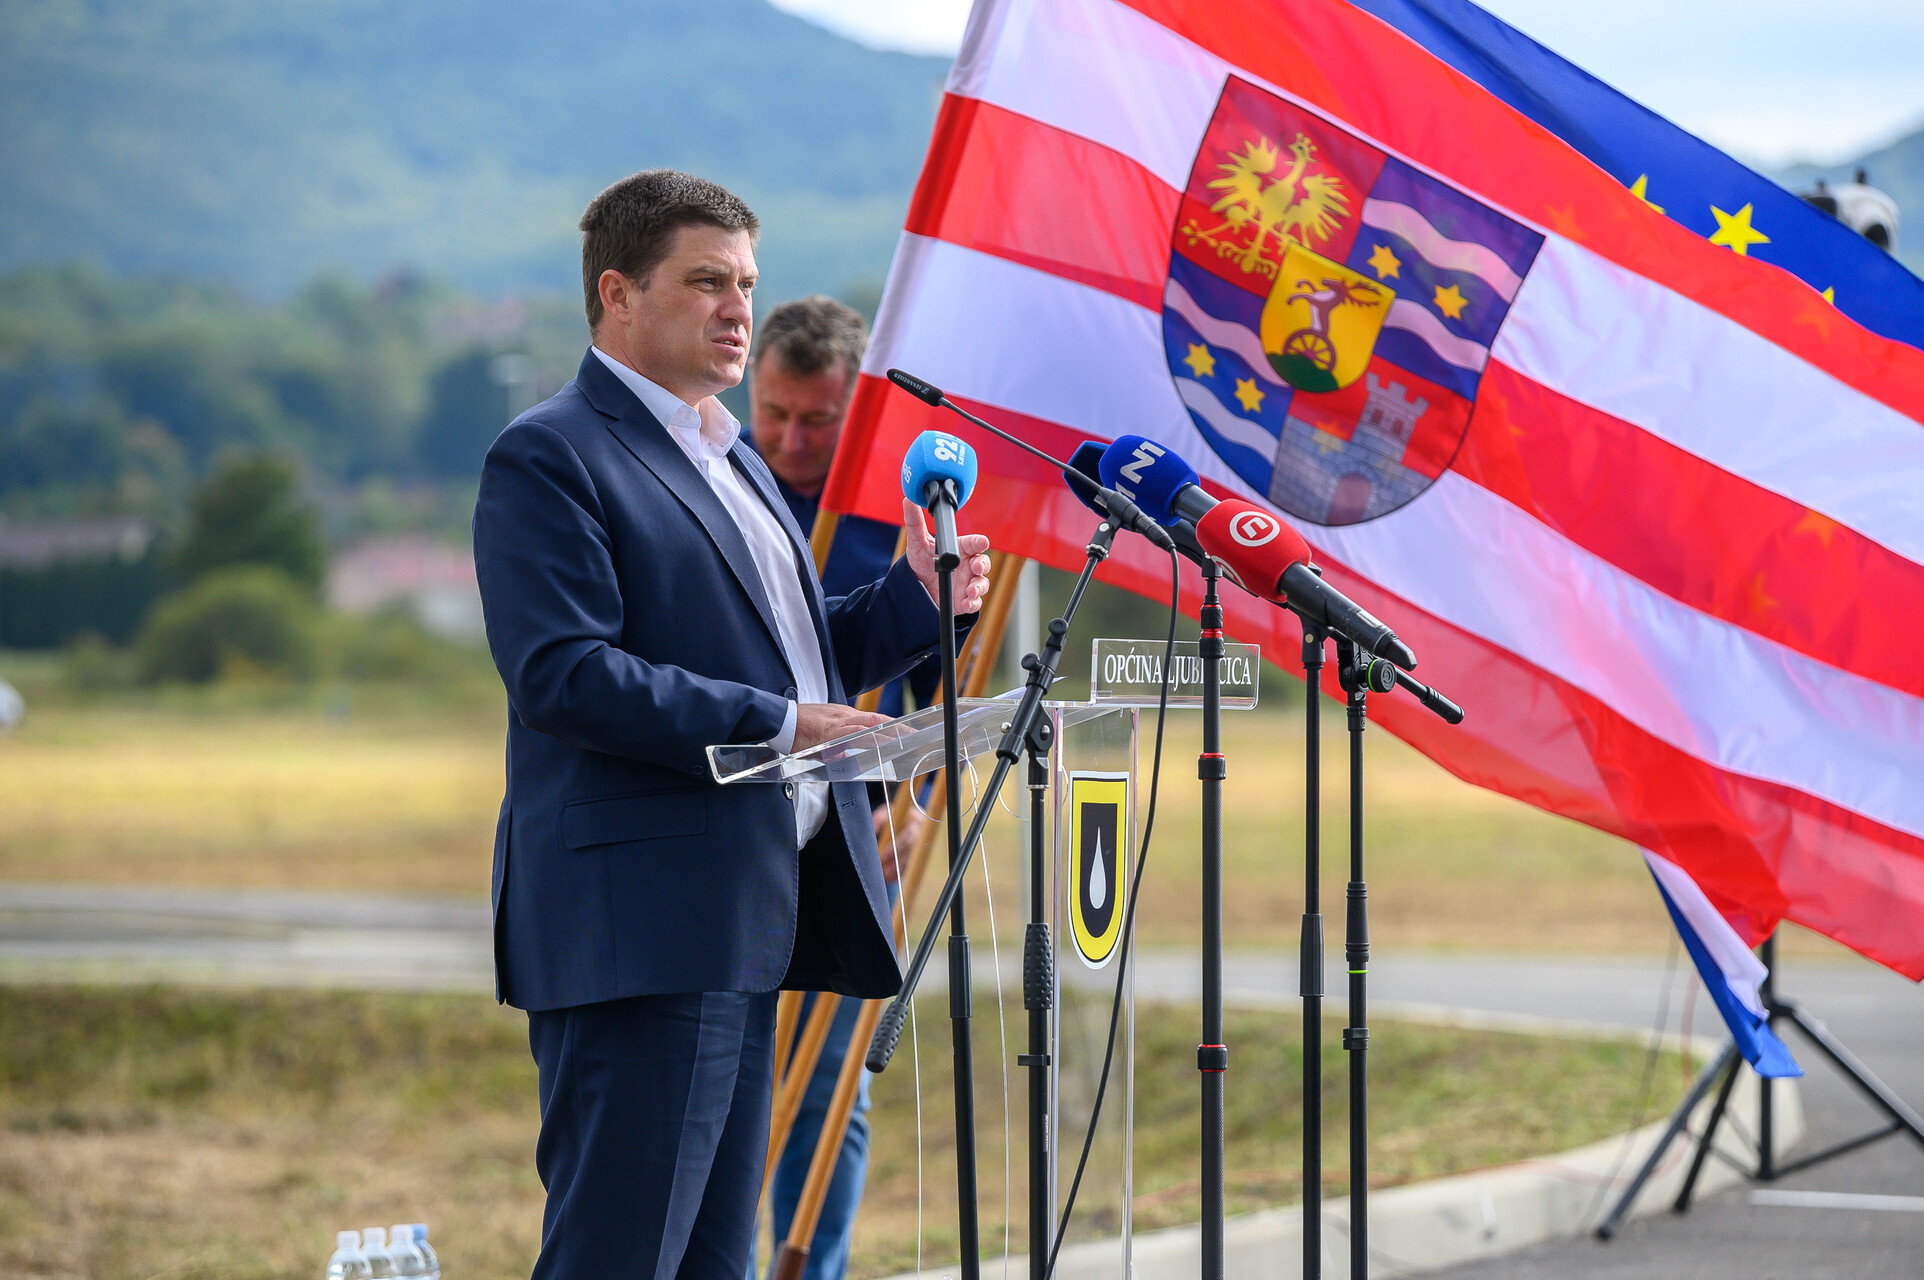 Ministar mora, prometa i infrastrukture Oleg Butković prilikom dovršenja infrastrukturnog opremanja Poduzetničke zone Ljubešćica